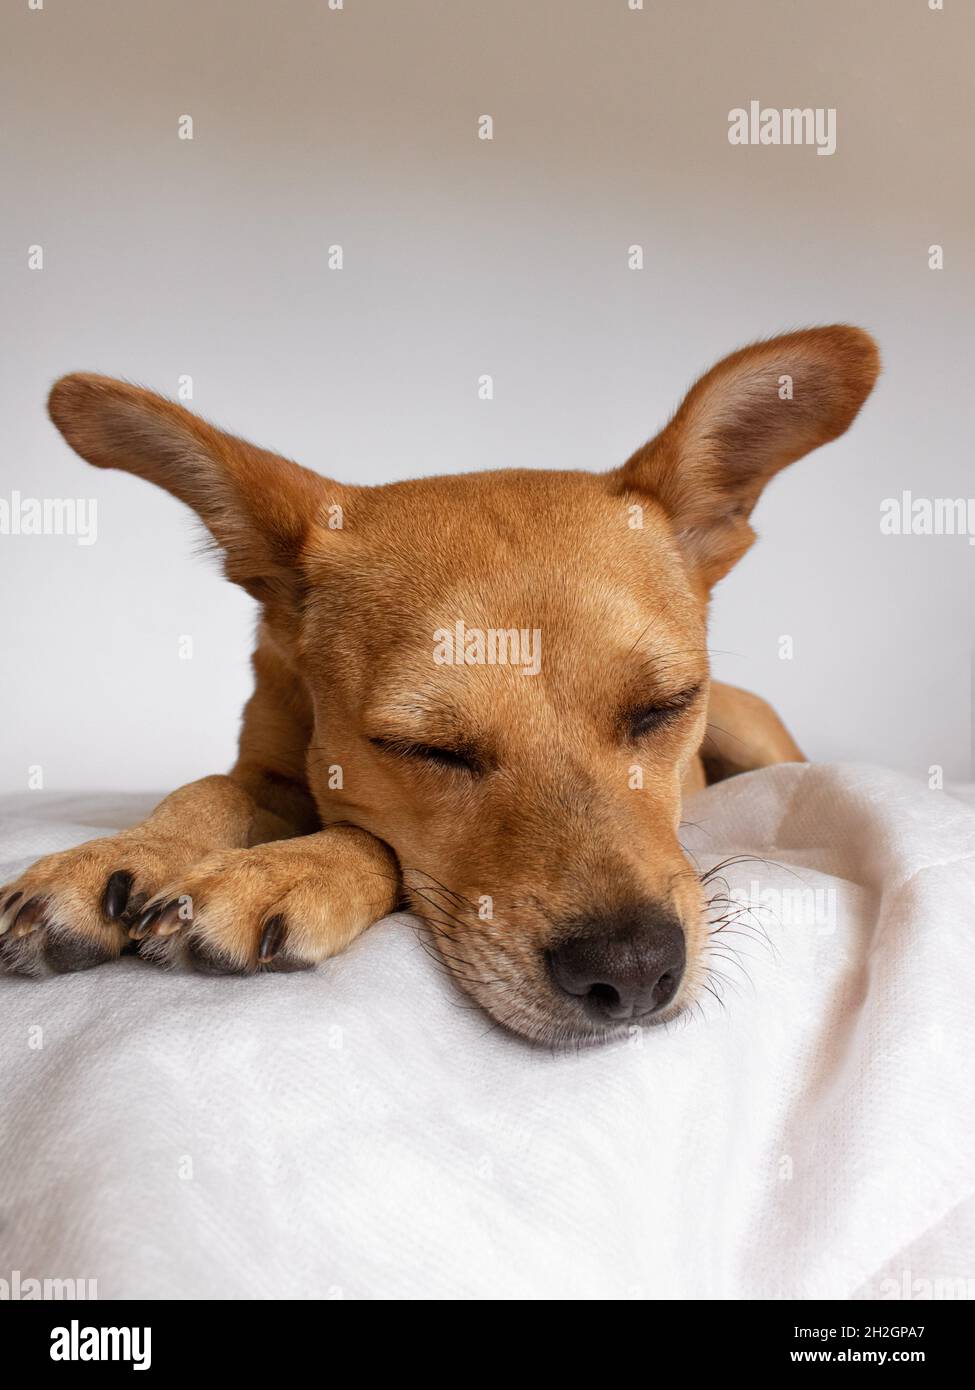 Un carino cane di razza mista con orecchie che dorme comodamente su una morbida coperta bianca. Primo piano sul volto del cane davanti alla telecamera con spazio per il testo Foto Stock